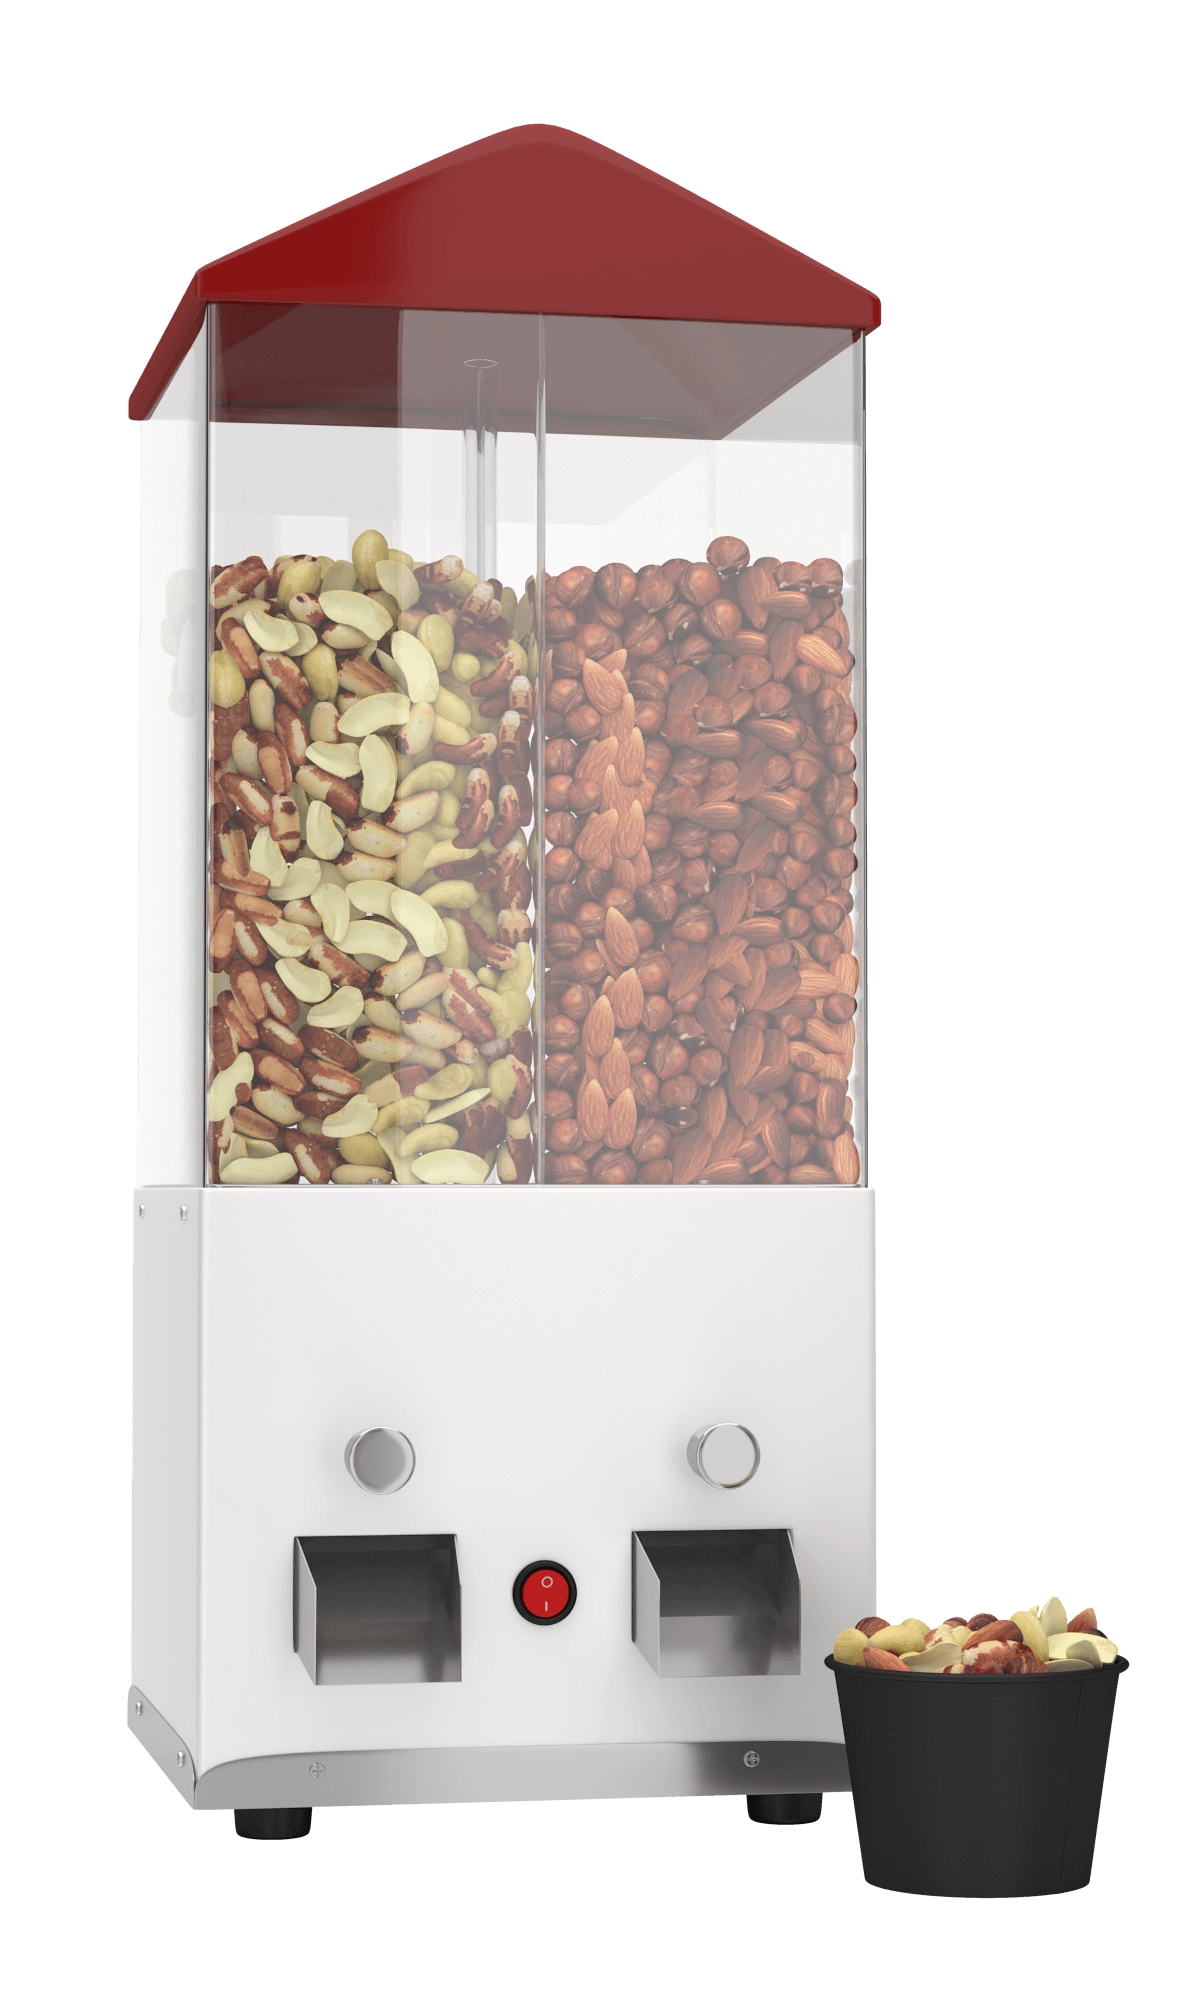 Hot nuts vending machine